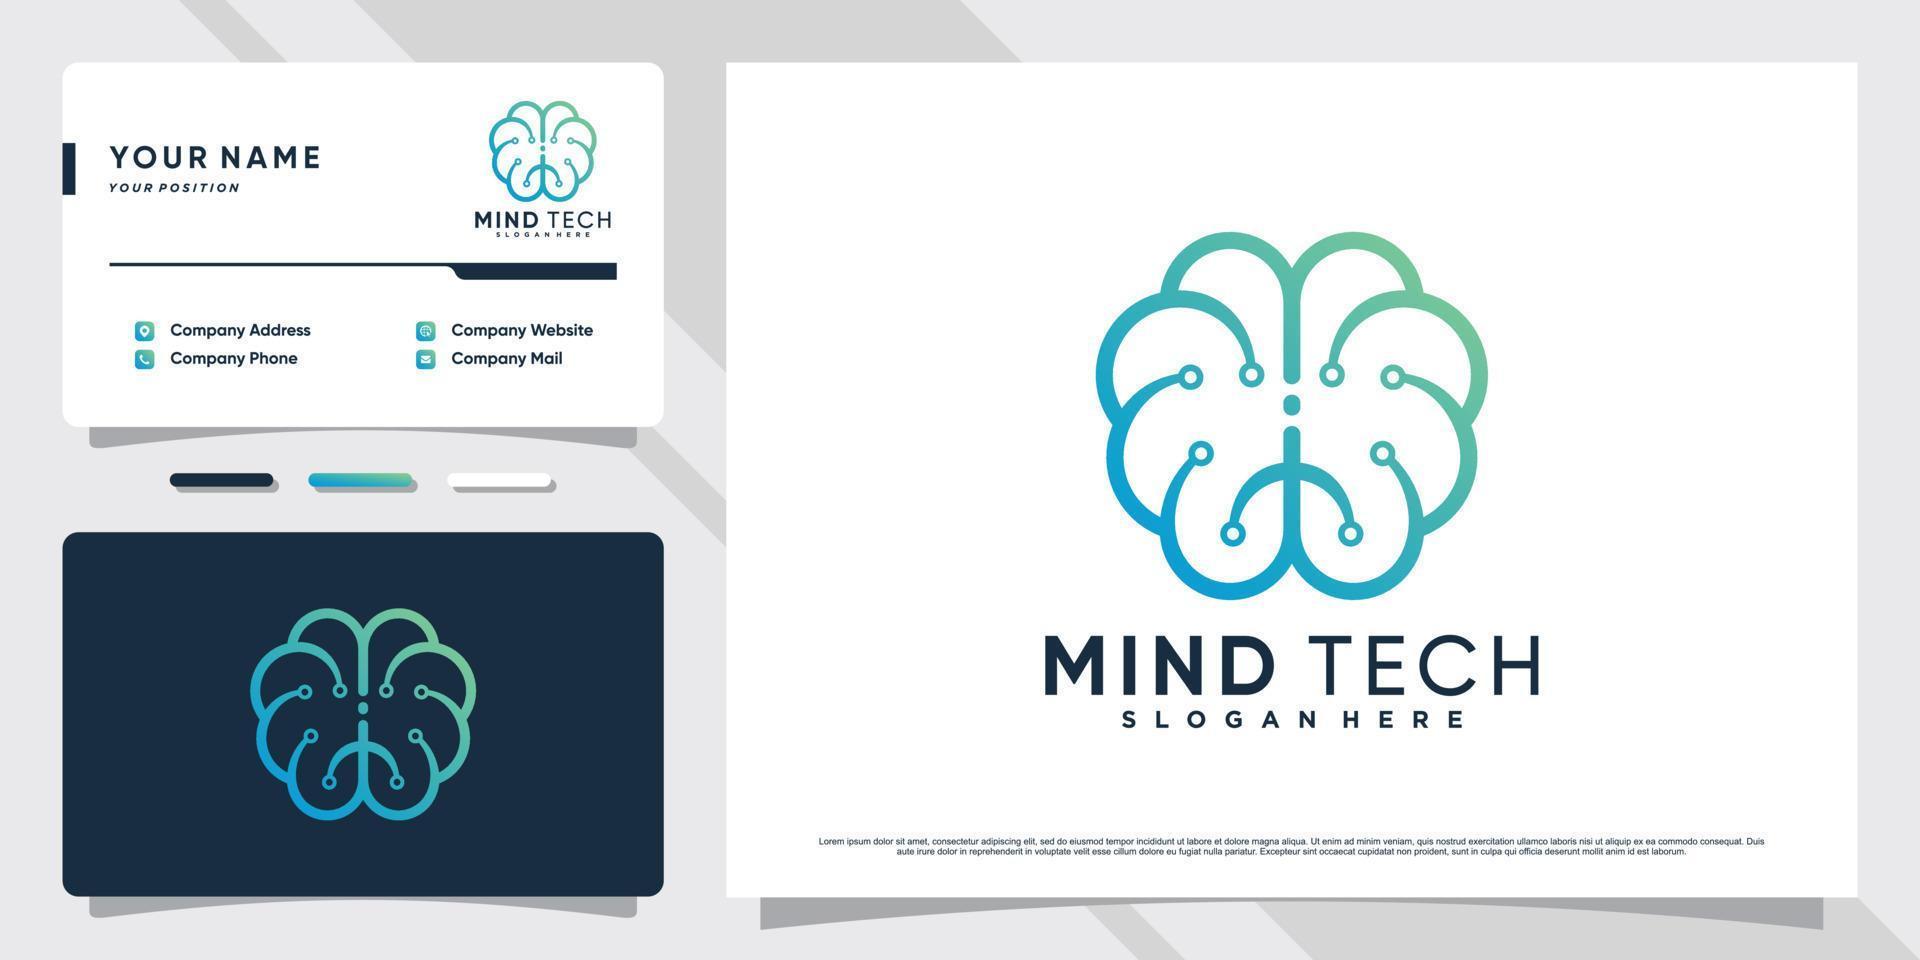 ilustração de design de logotipo de tecnologia cerebral com conceito criativo e vetor premium de modelo de cartão de visita